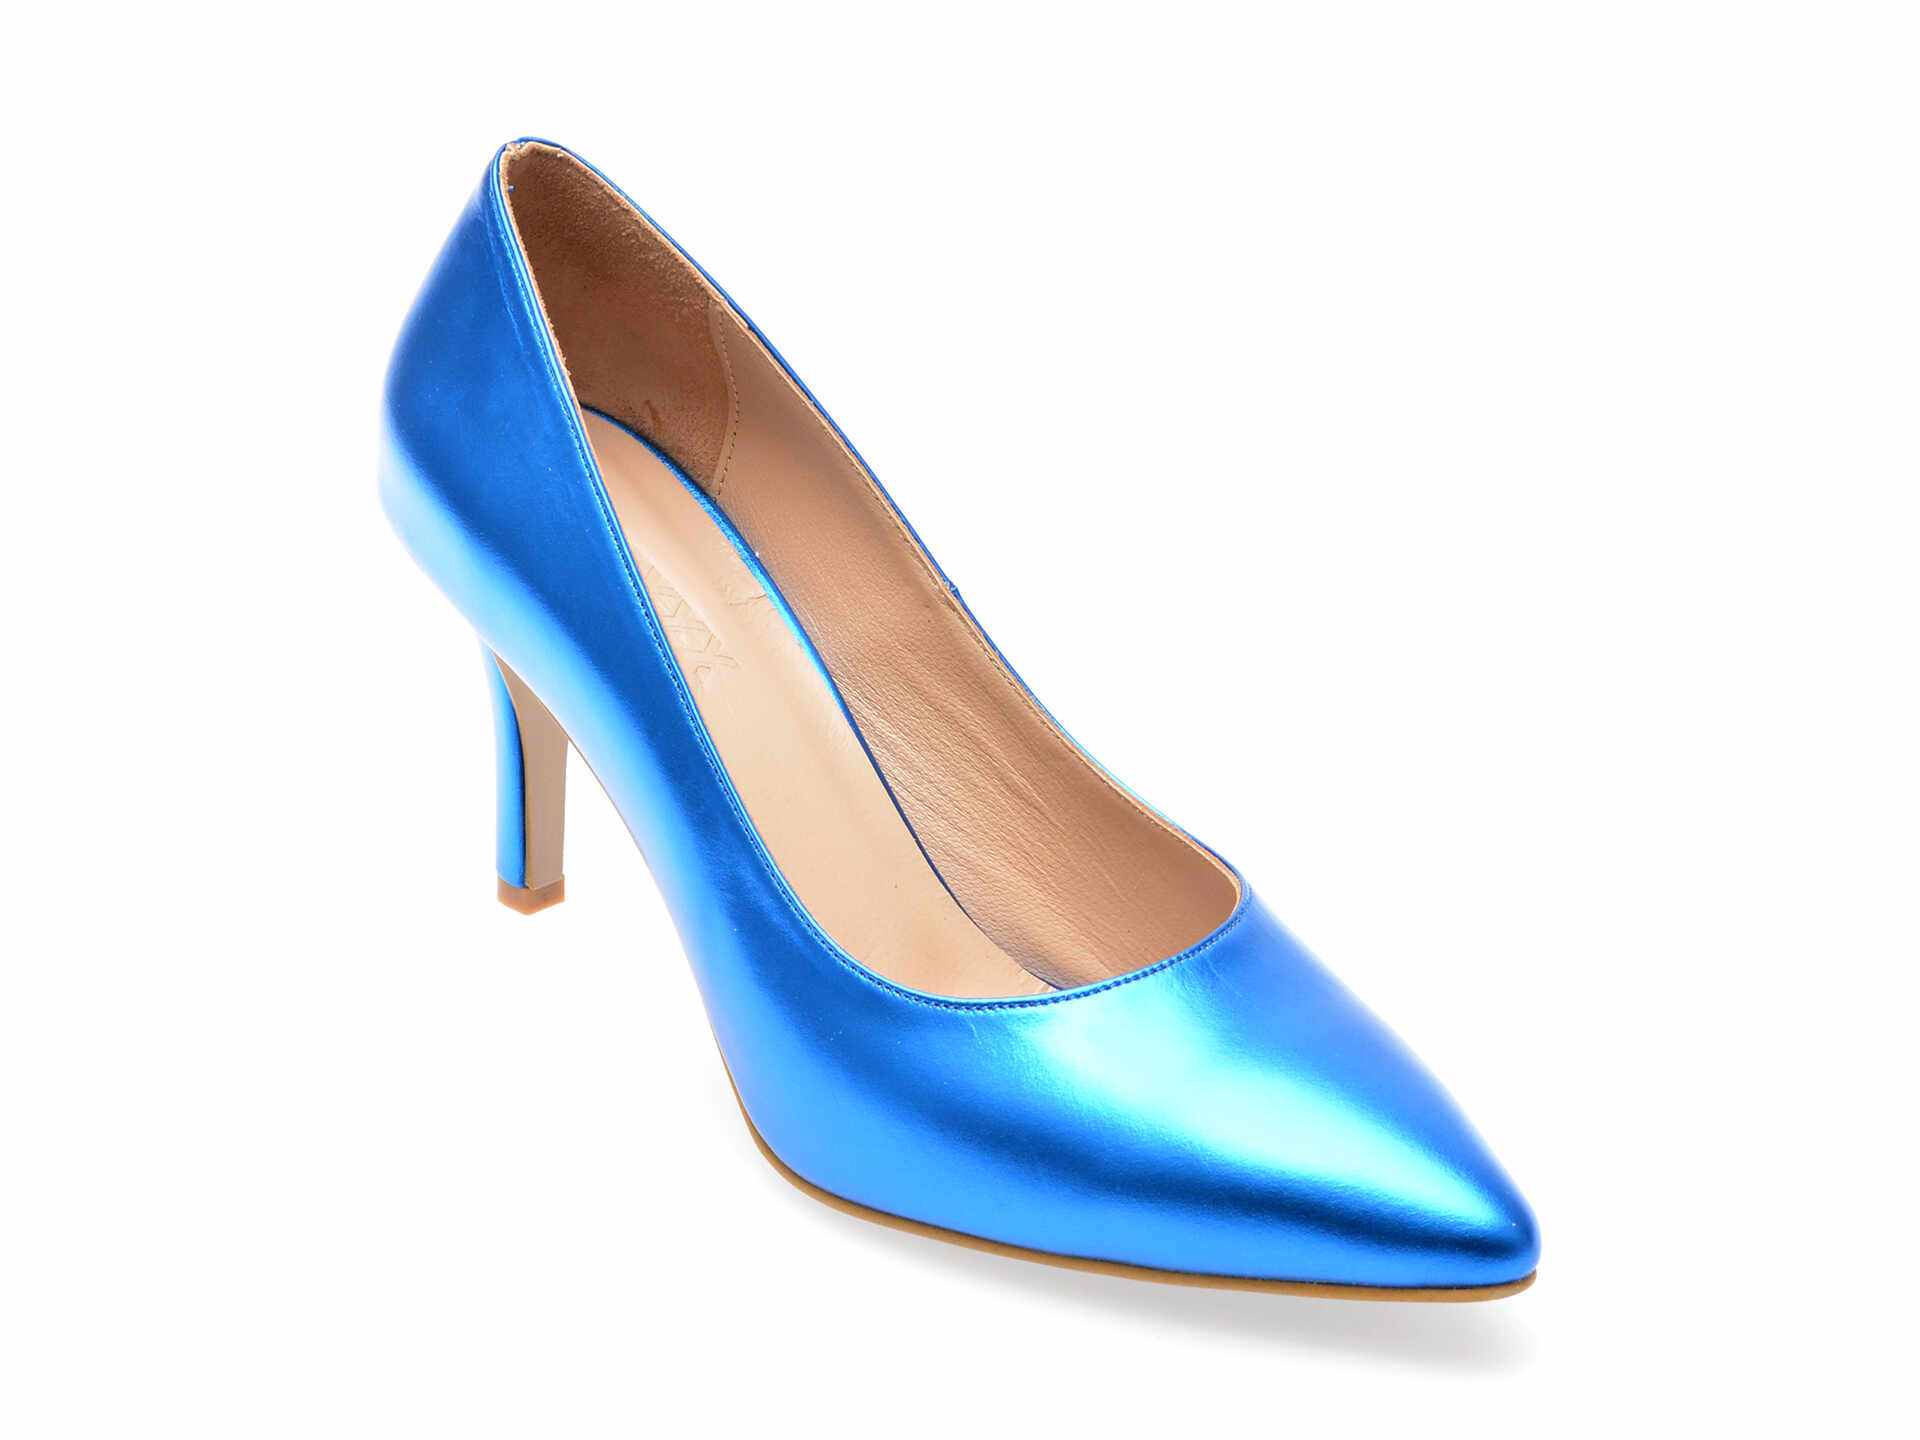 Pantofi GRYXX albastri, 113, din piele naturala